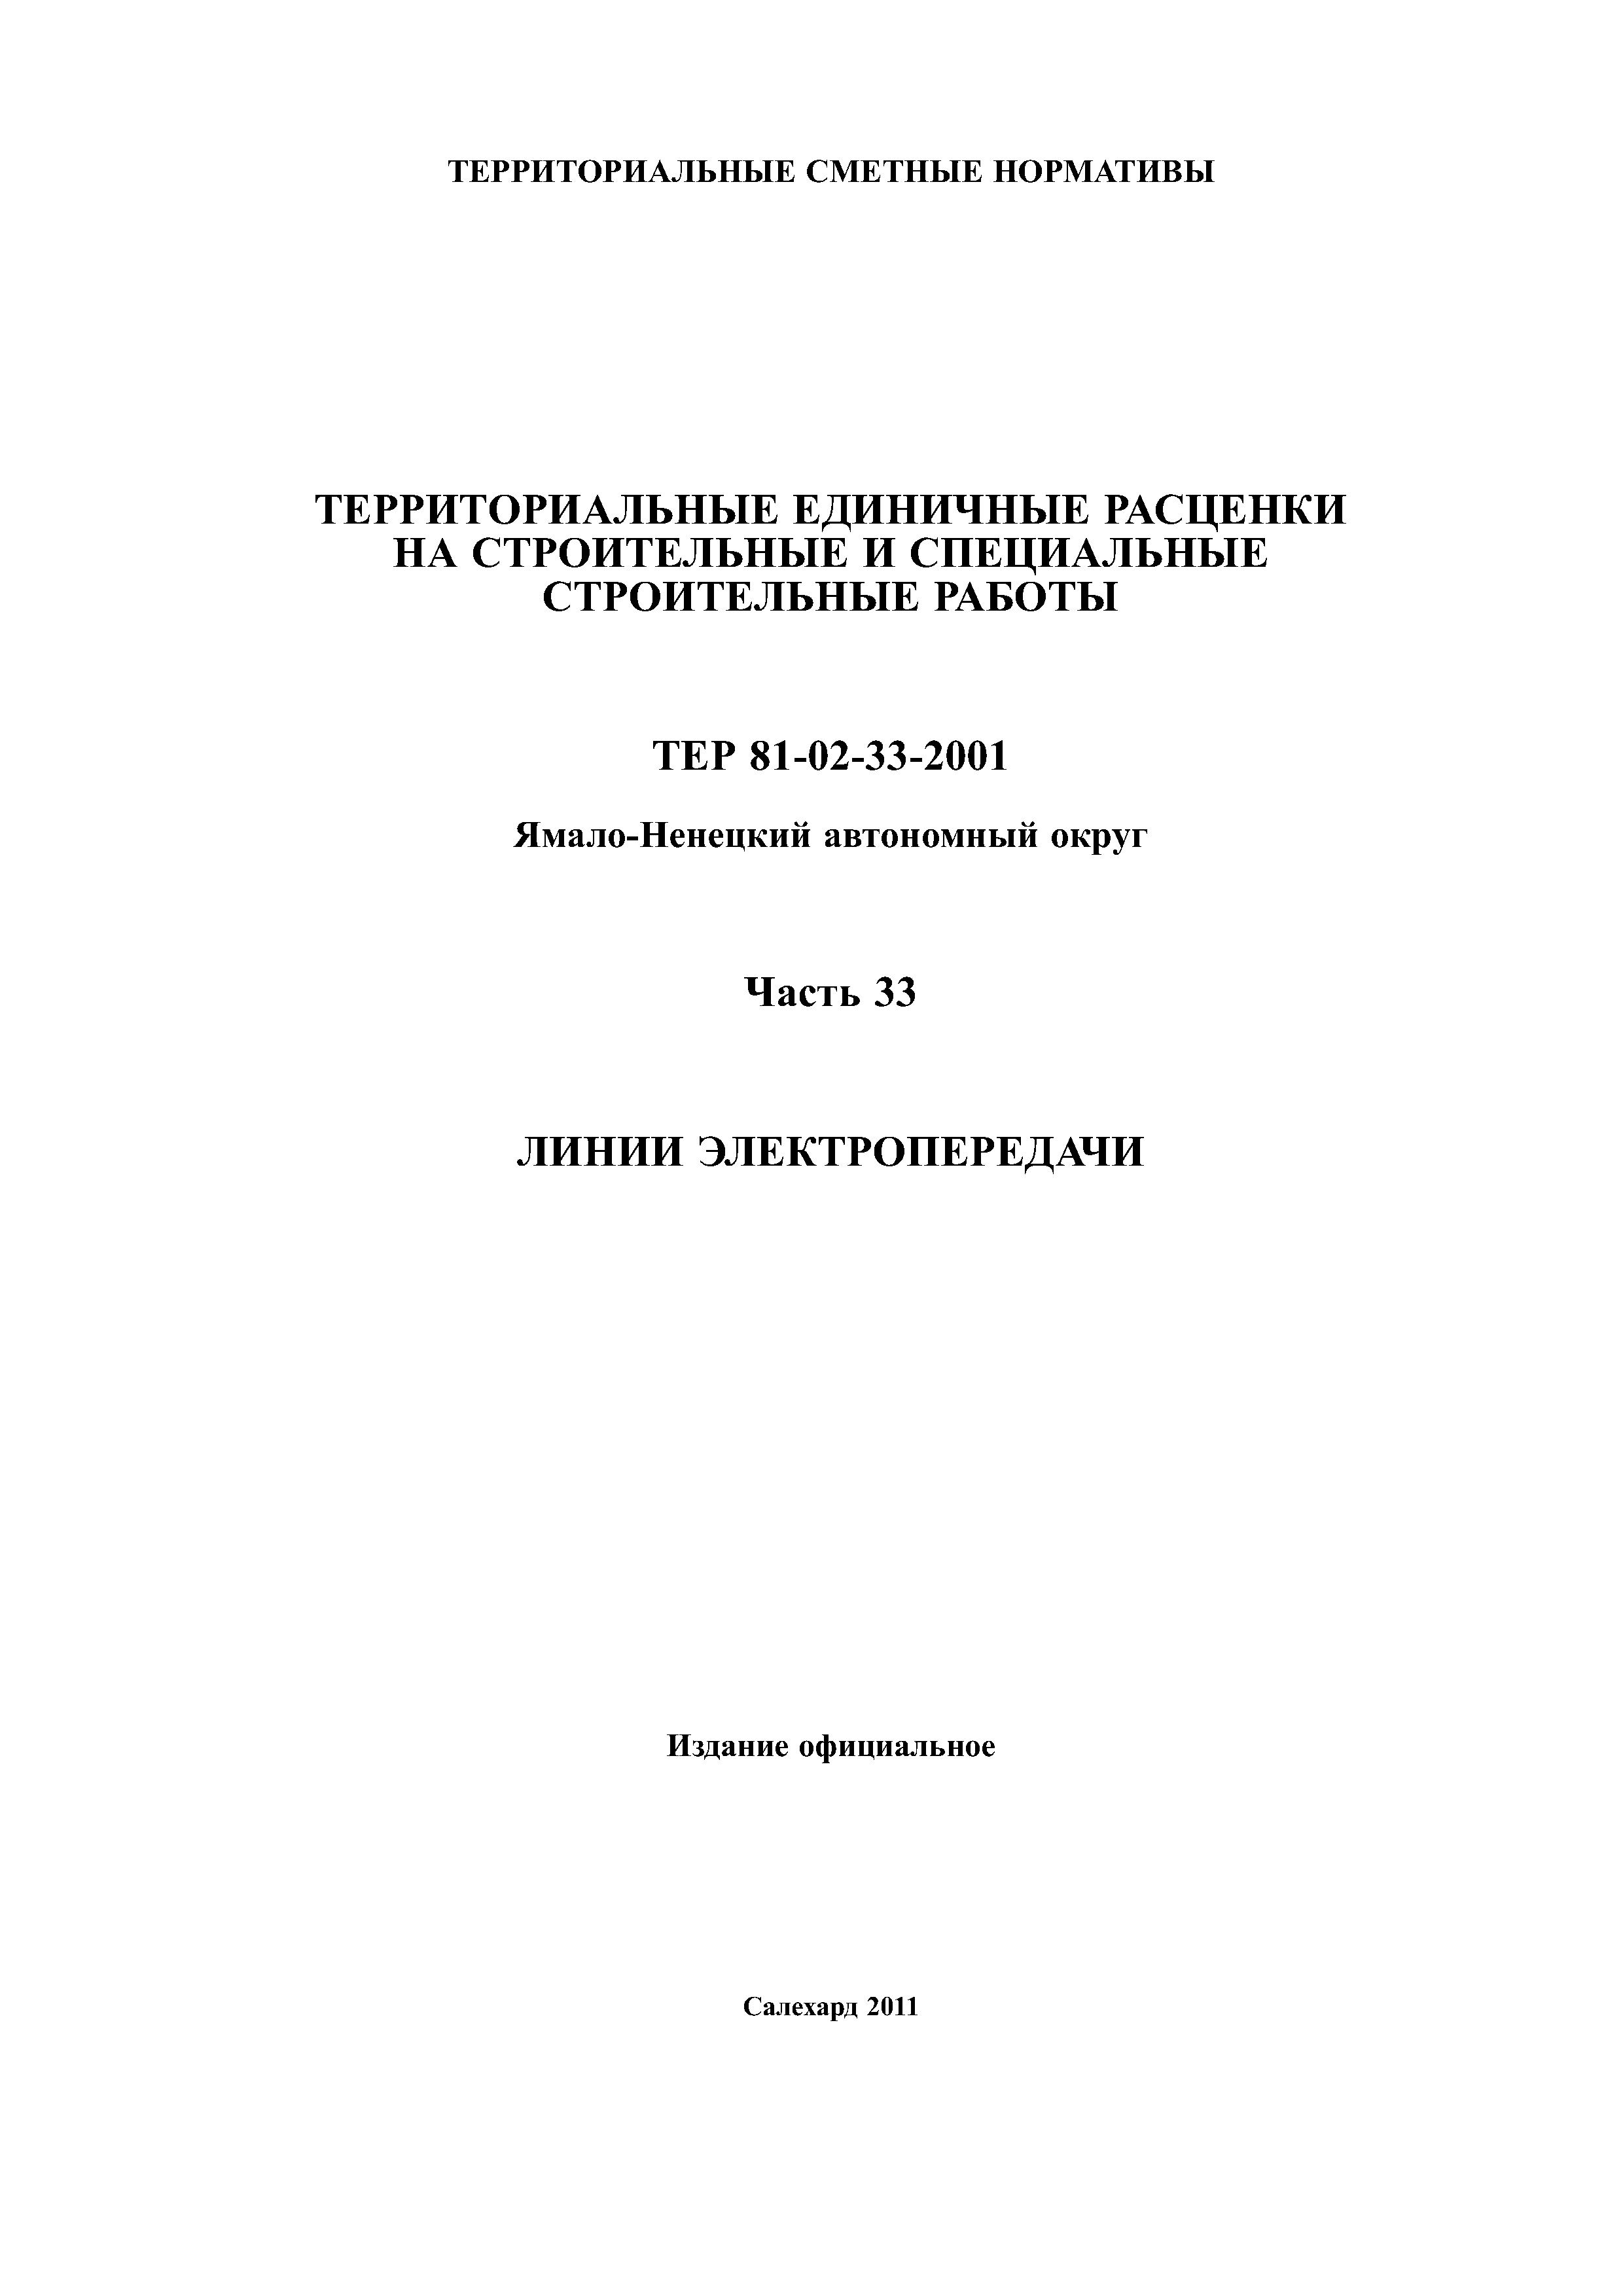 ТЕР Ямало-Ненецкий автономный округ 33-2001